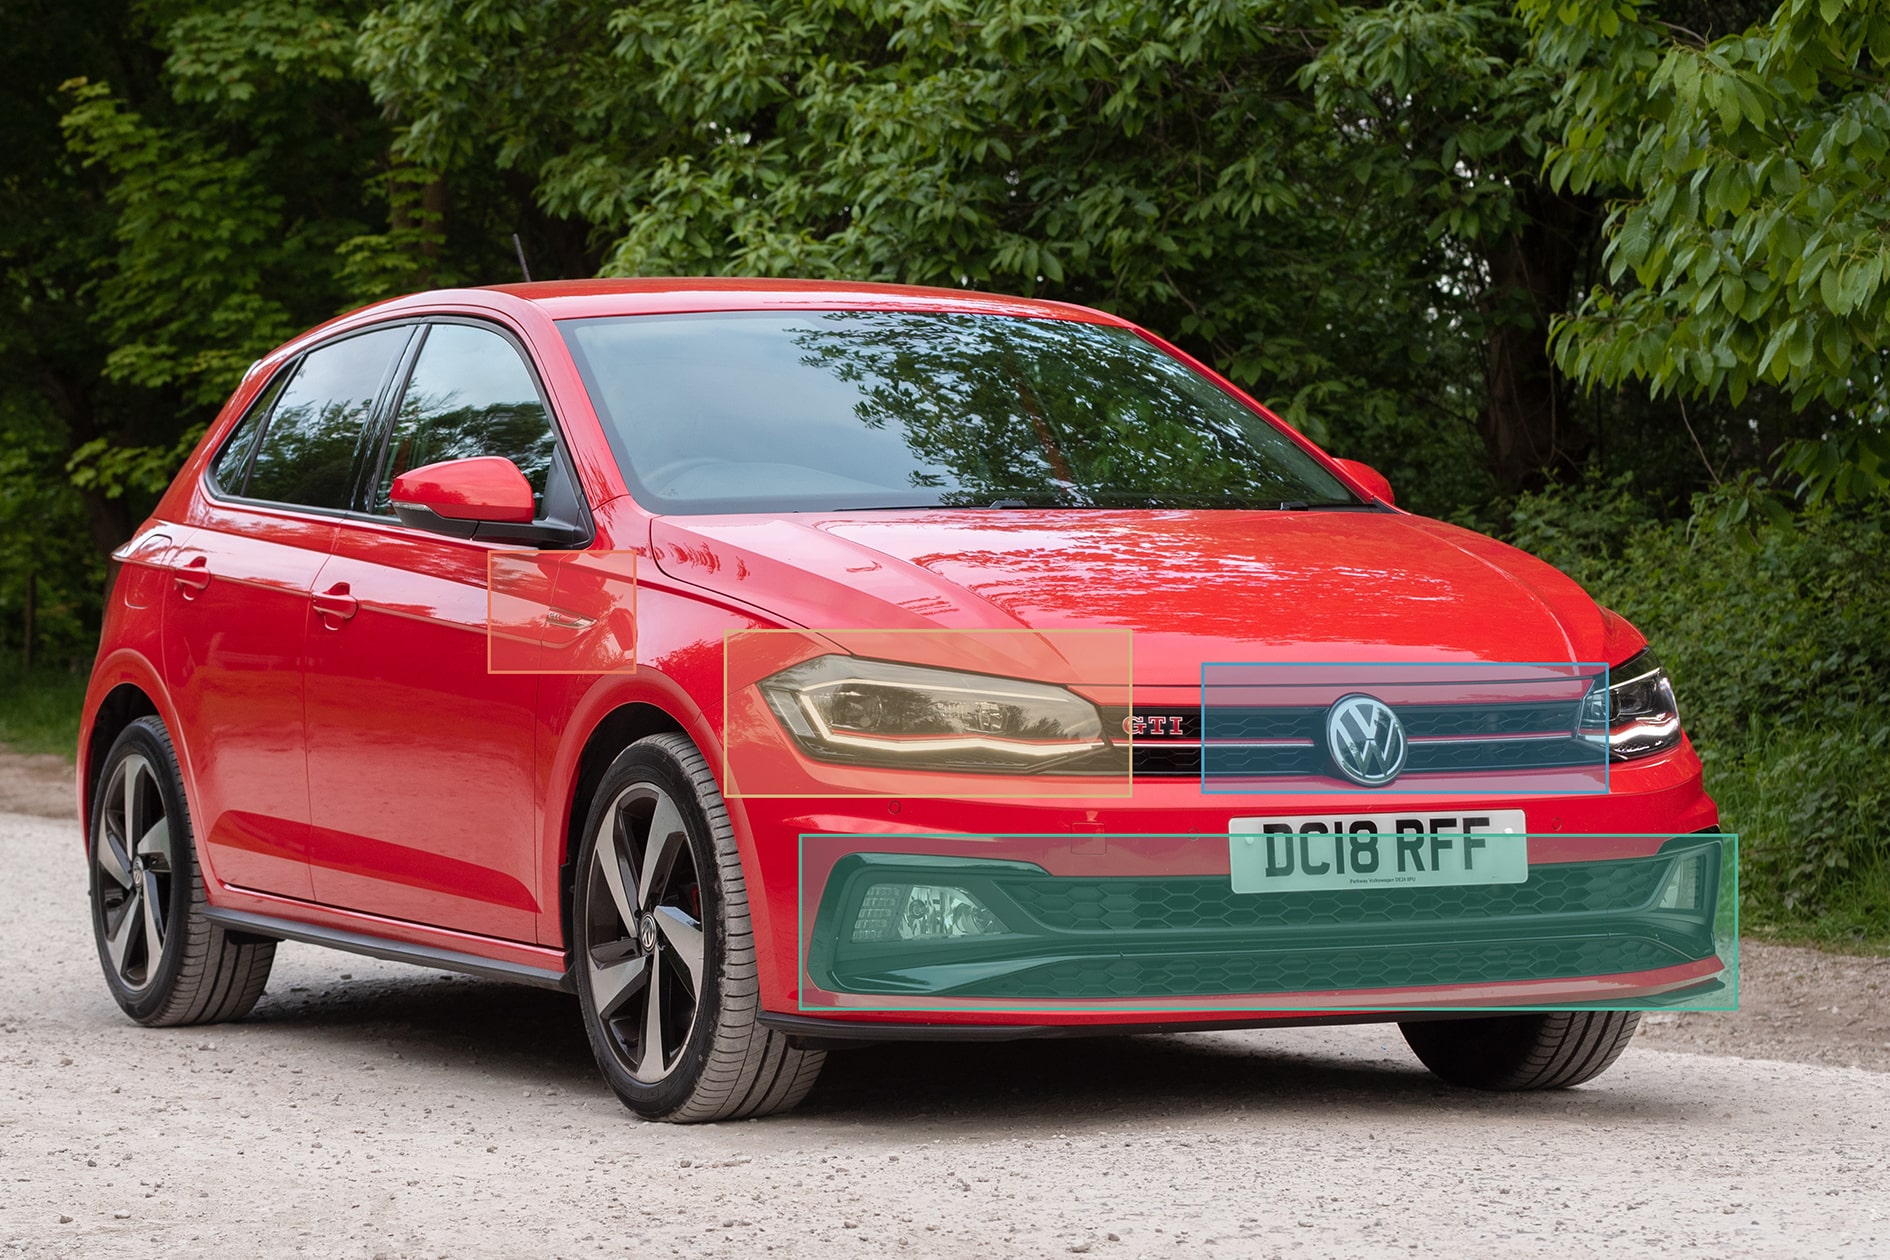 Roter VW Golf GTI vor grüner Landschaft - KFZ-Erkennung mit KI-Modell: Das Auto wird auf seine Merkmale hin geprüft